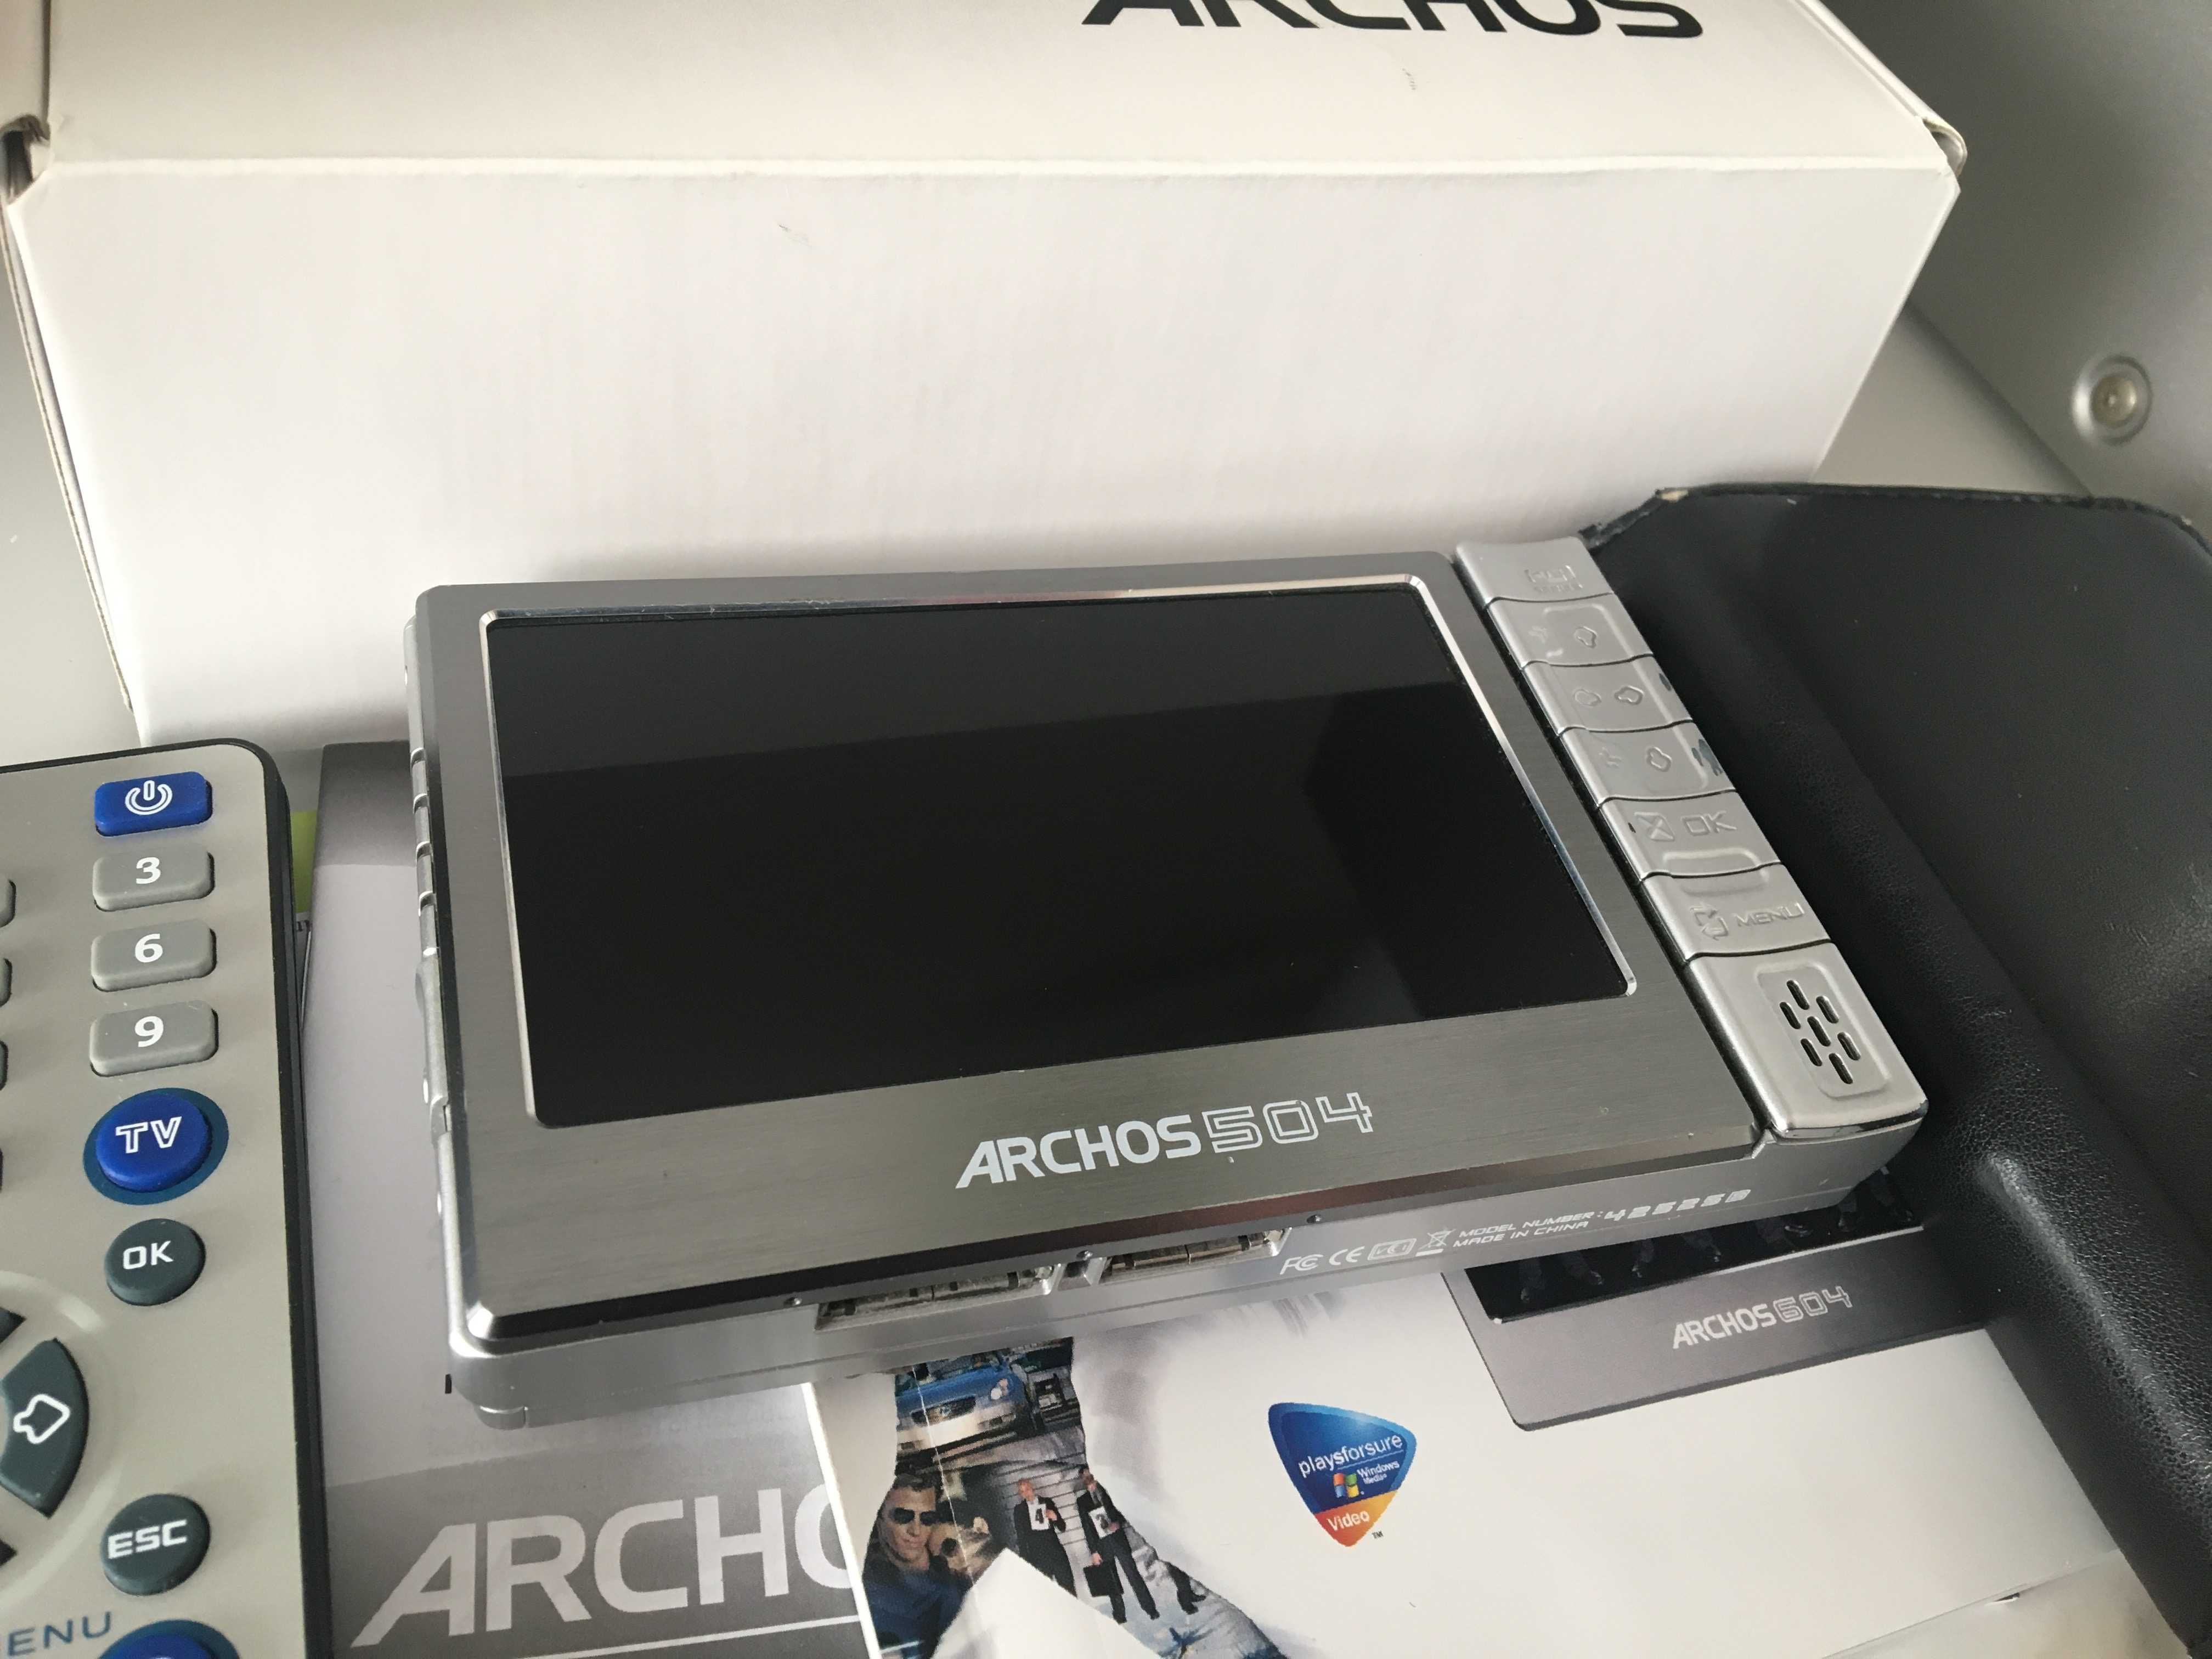 Archos 504 Multimedia Player 80 gb video/audio în ambalajul original